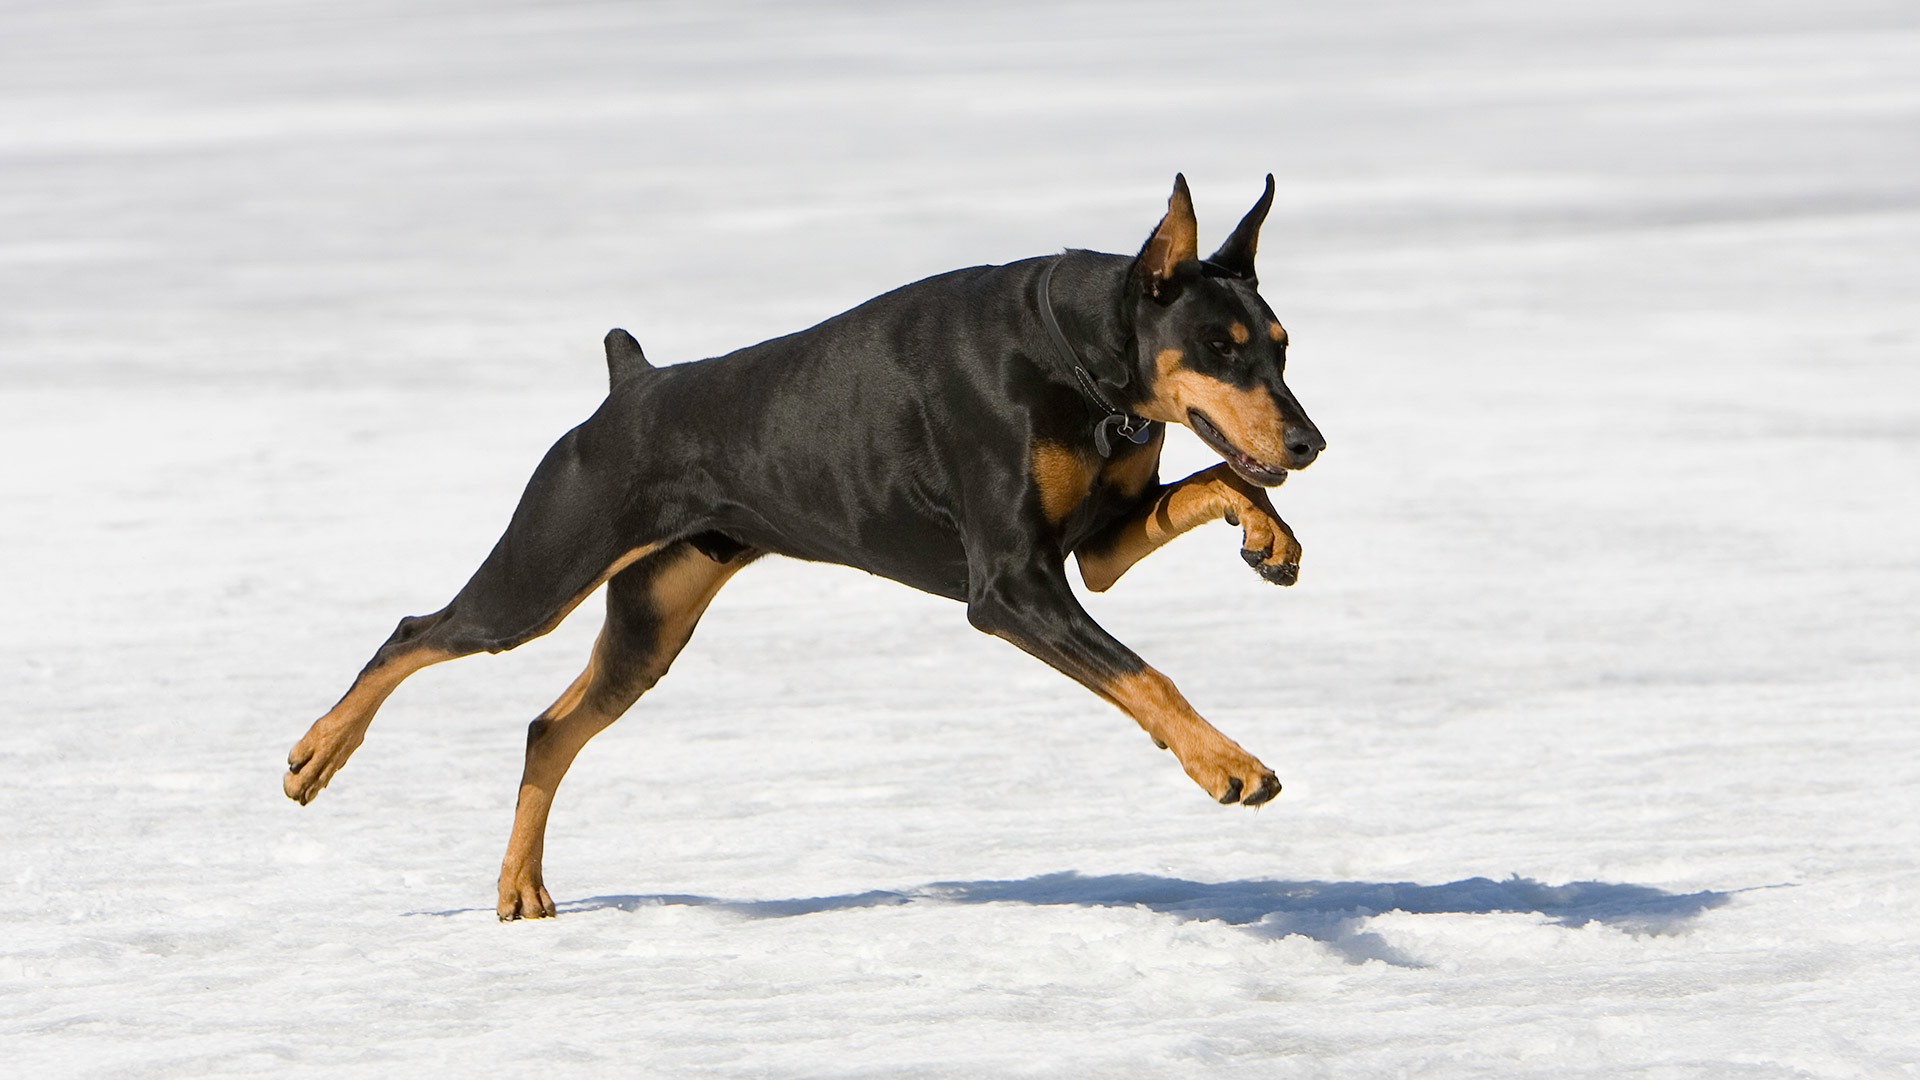 El dóberman pinscher es conocido por su velocidad y resistencia (Getty Images)